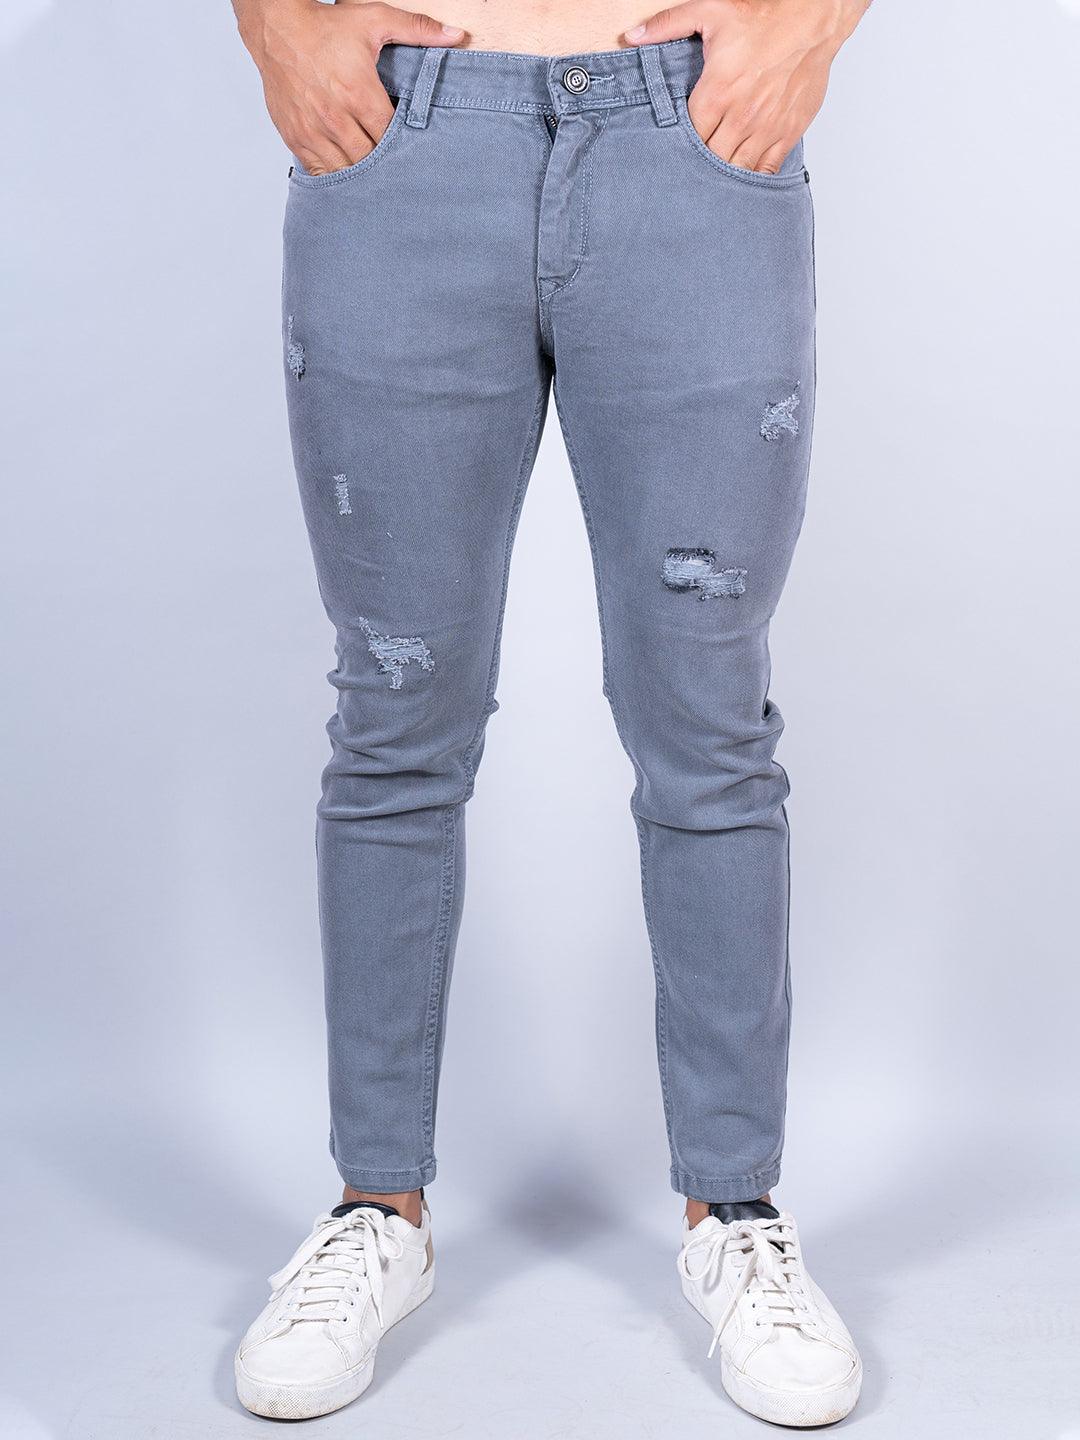 Lee Grey Jeans - Buy Lee Grey Jeans online in India